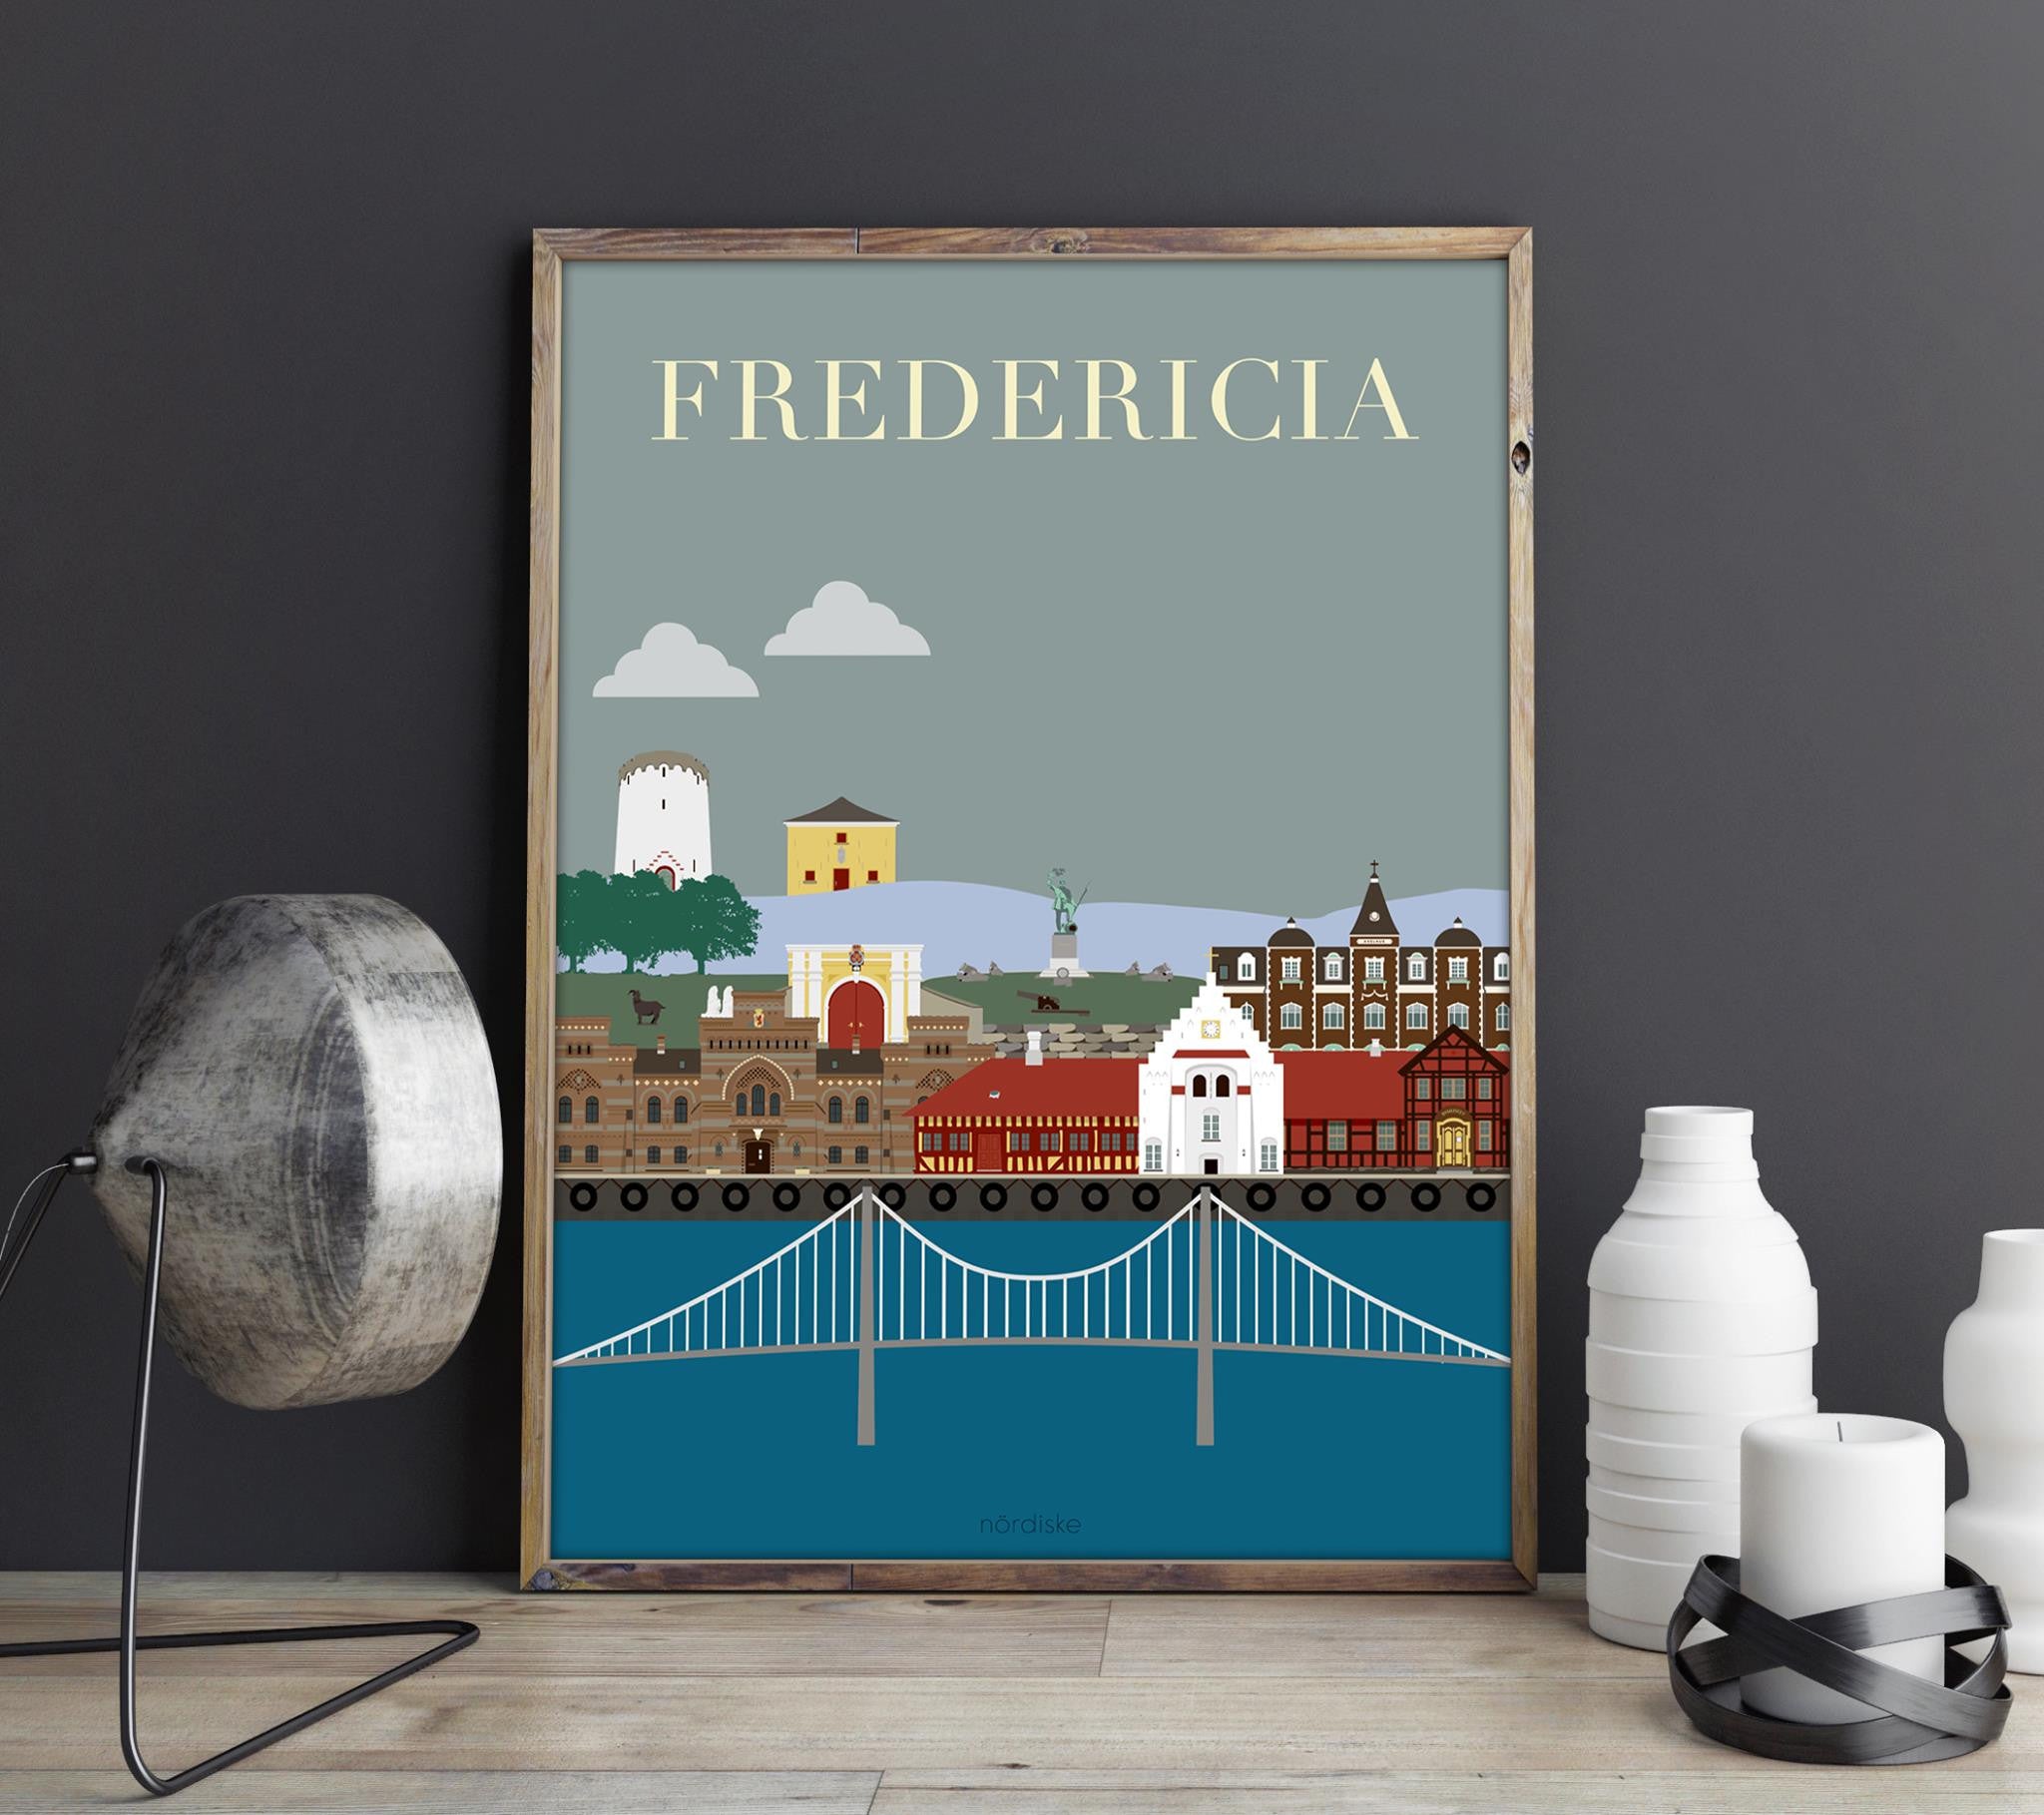 bladre Omgivelser pensum Fredericia Plakaten